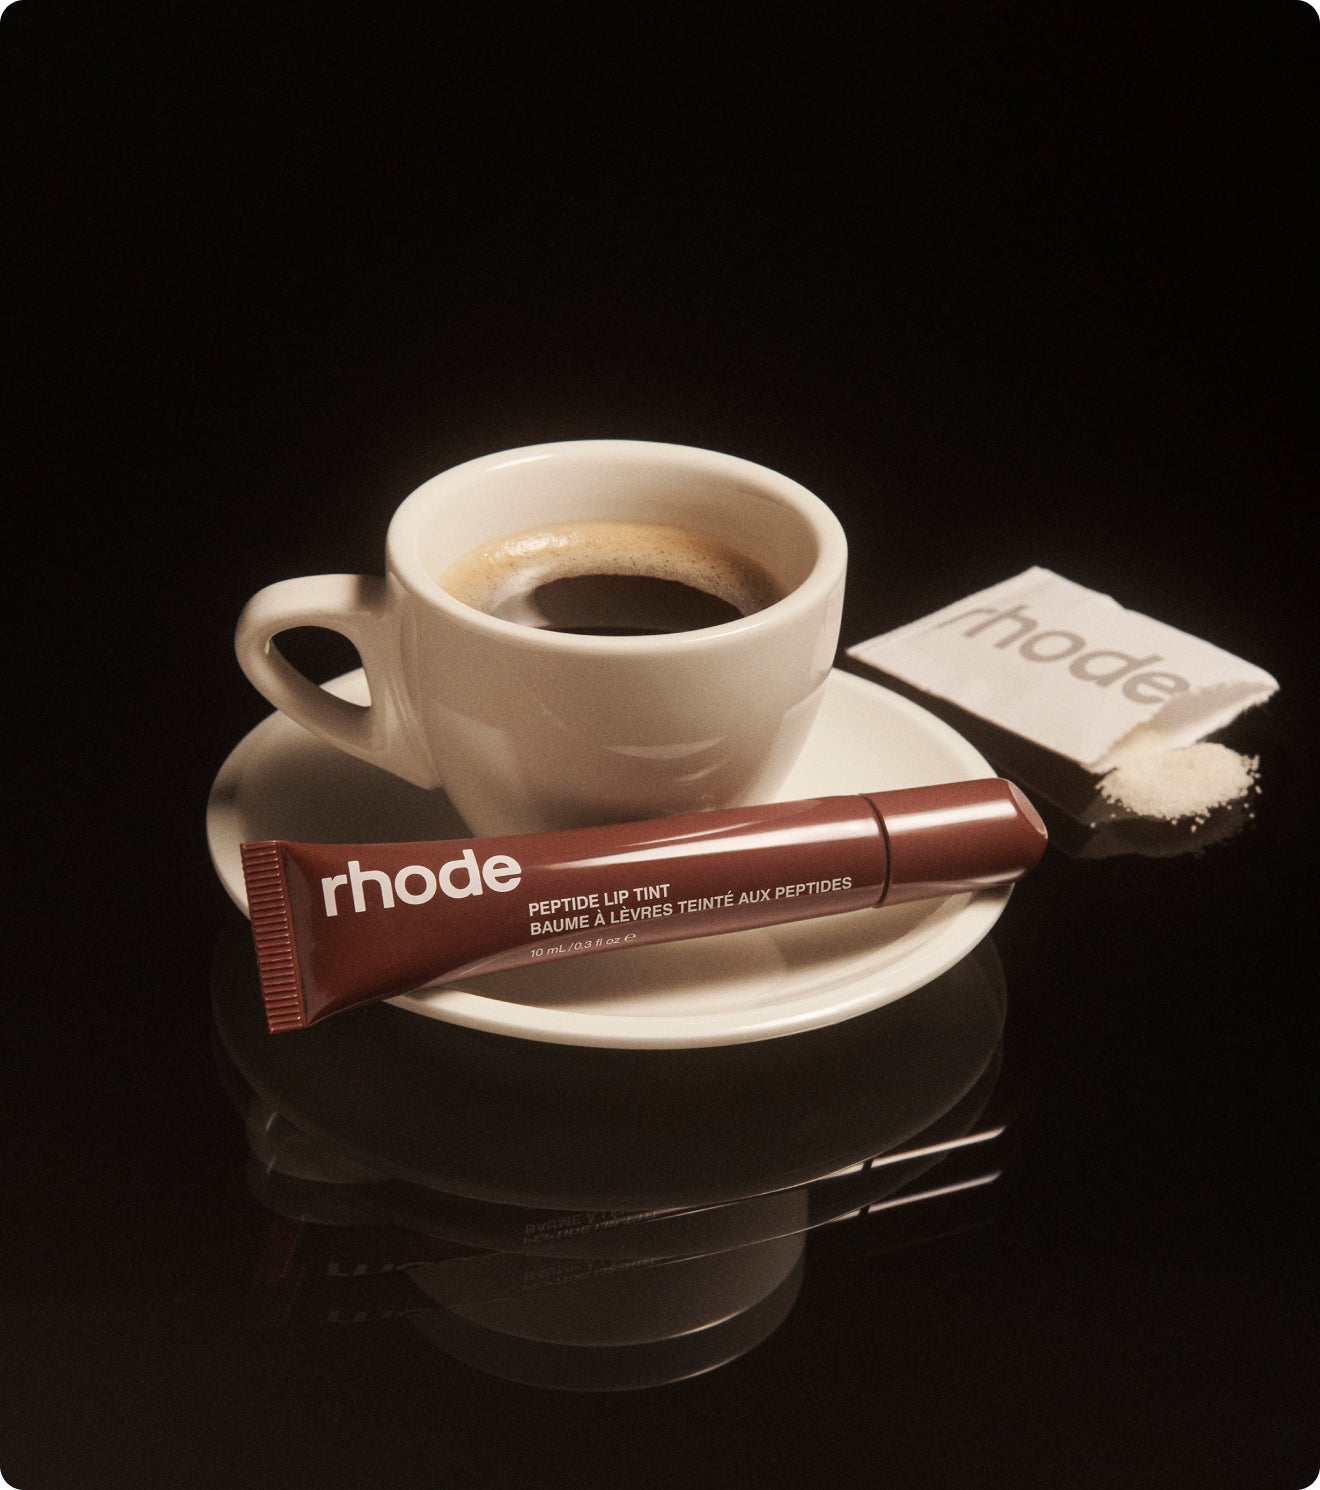 Rhode - Peptide Lip Tint - Tono Espresso